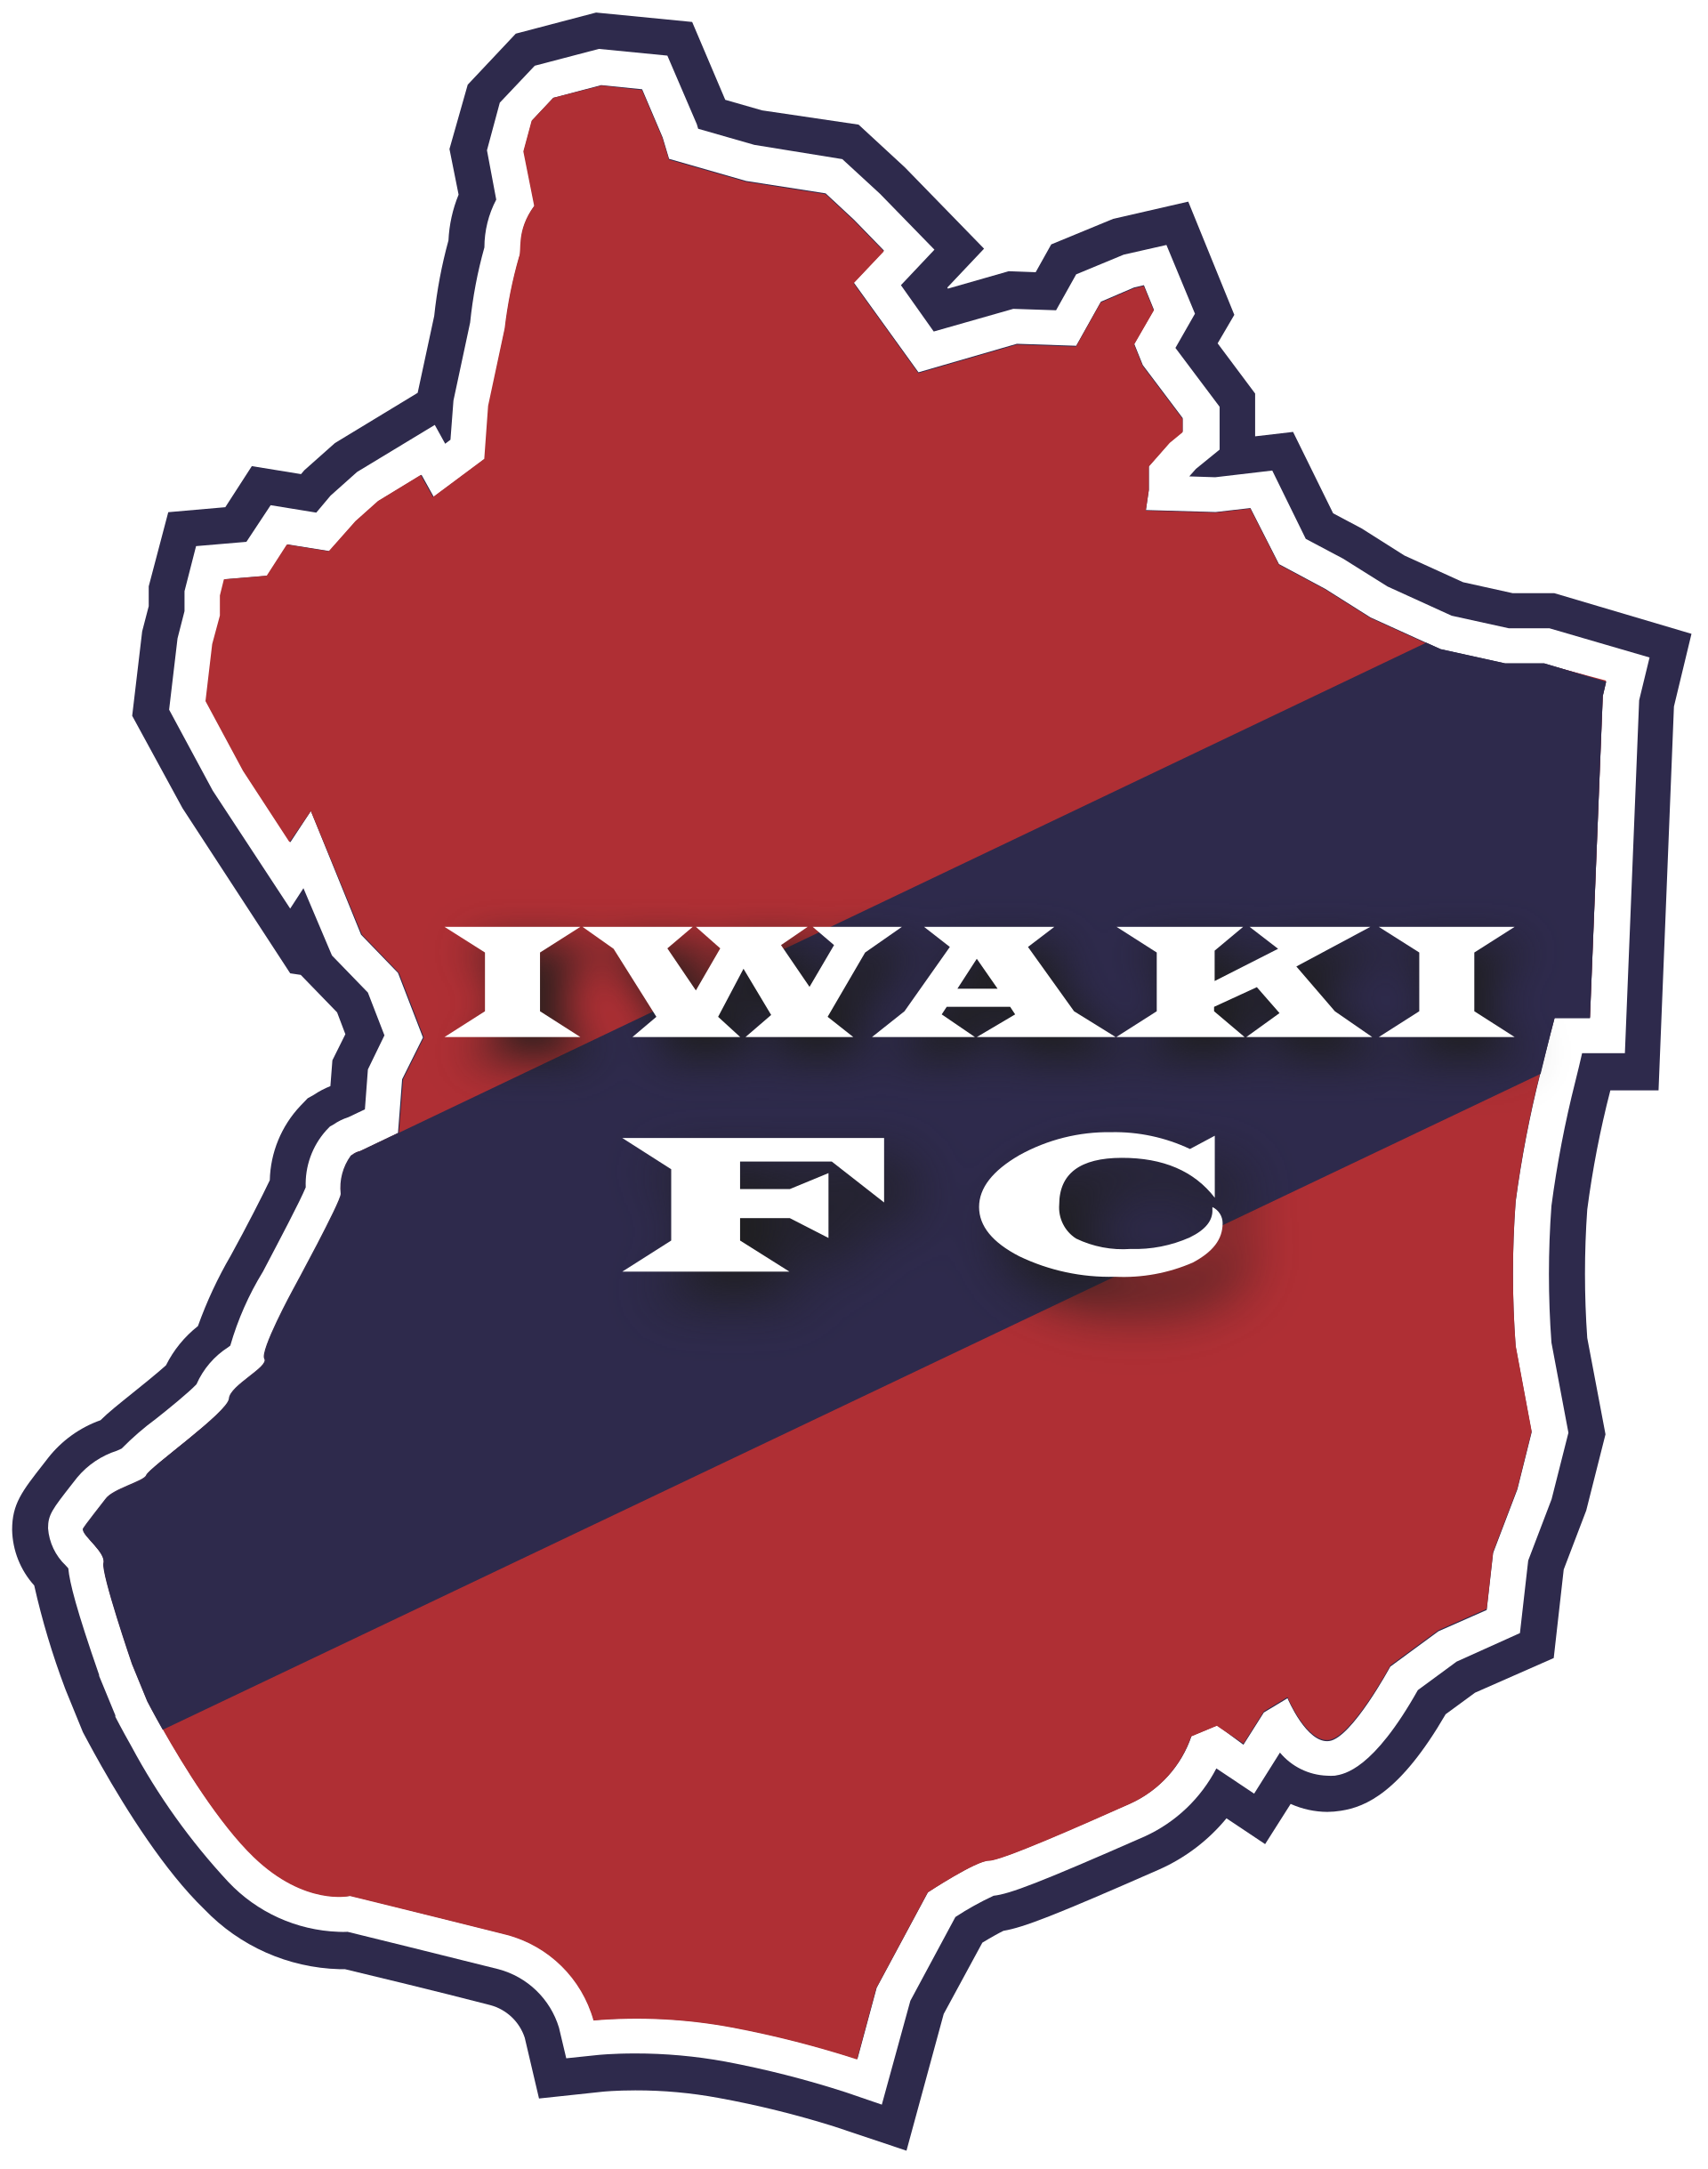 Wappen Iwaki FC  117177